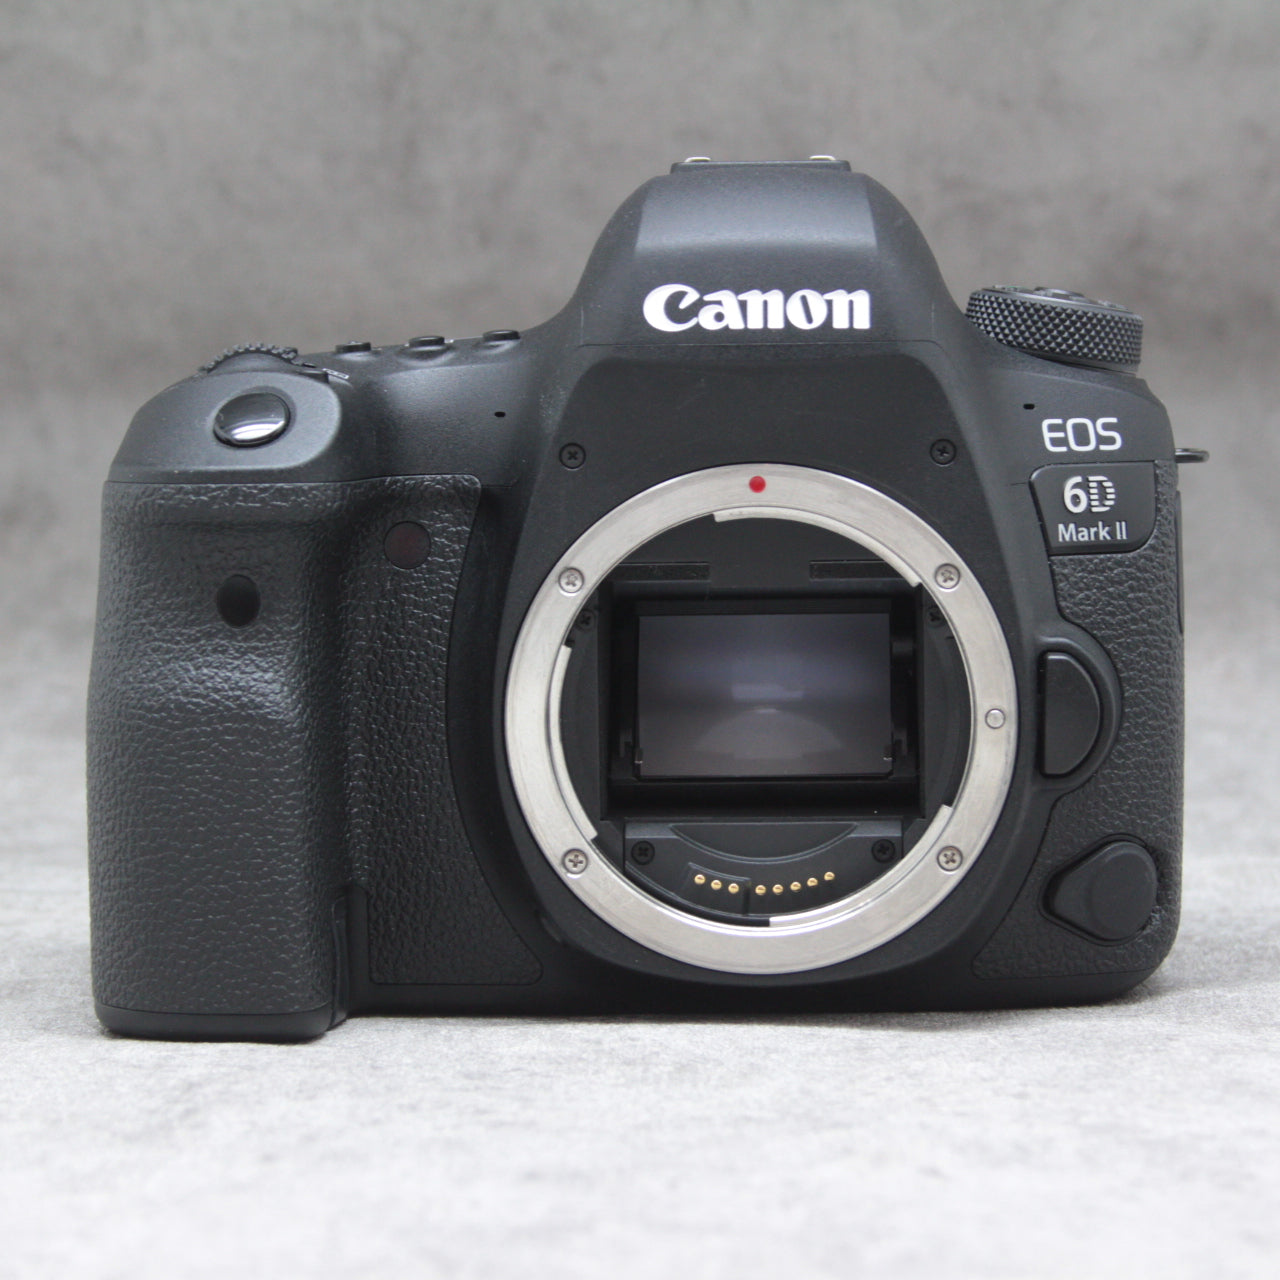 Canon デジタル一眼レフカメラ EOS 6D レンズキット EF24-105mm F4L IS USM付属 EOS6D24105ISLK i8my1cf